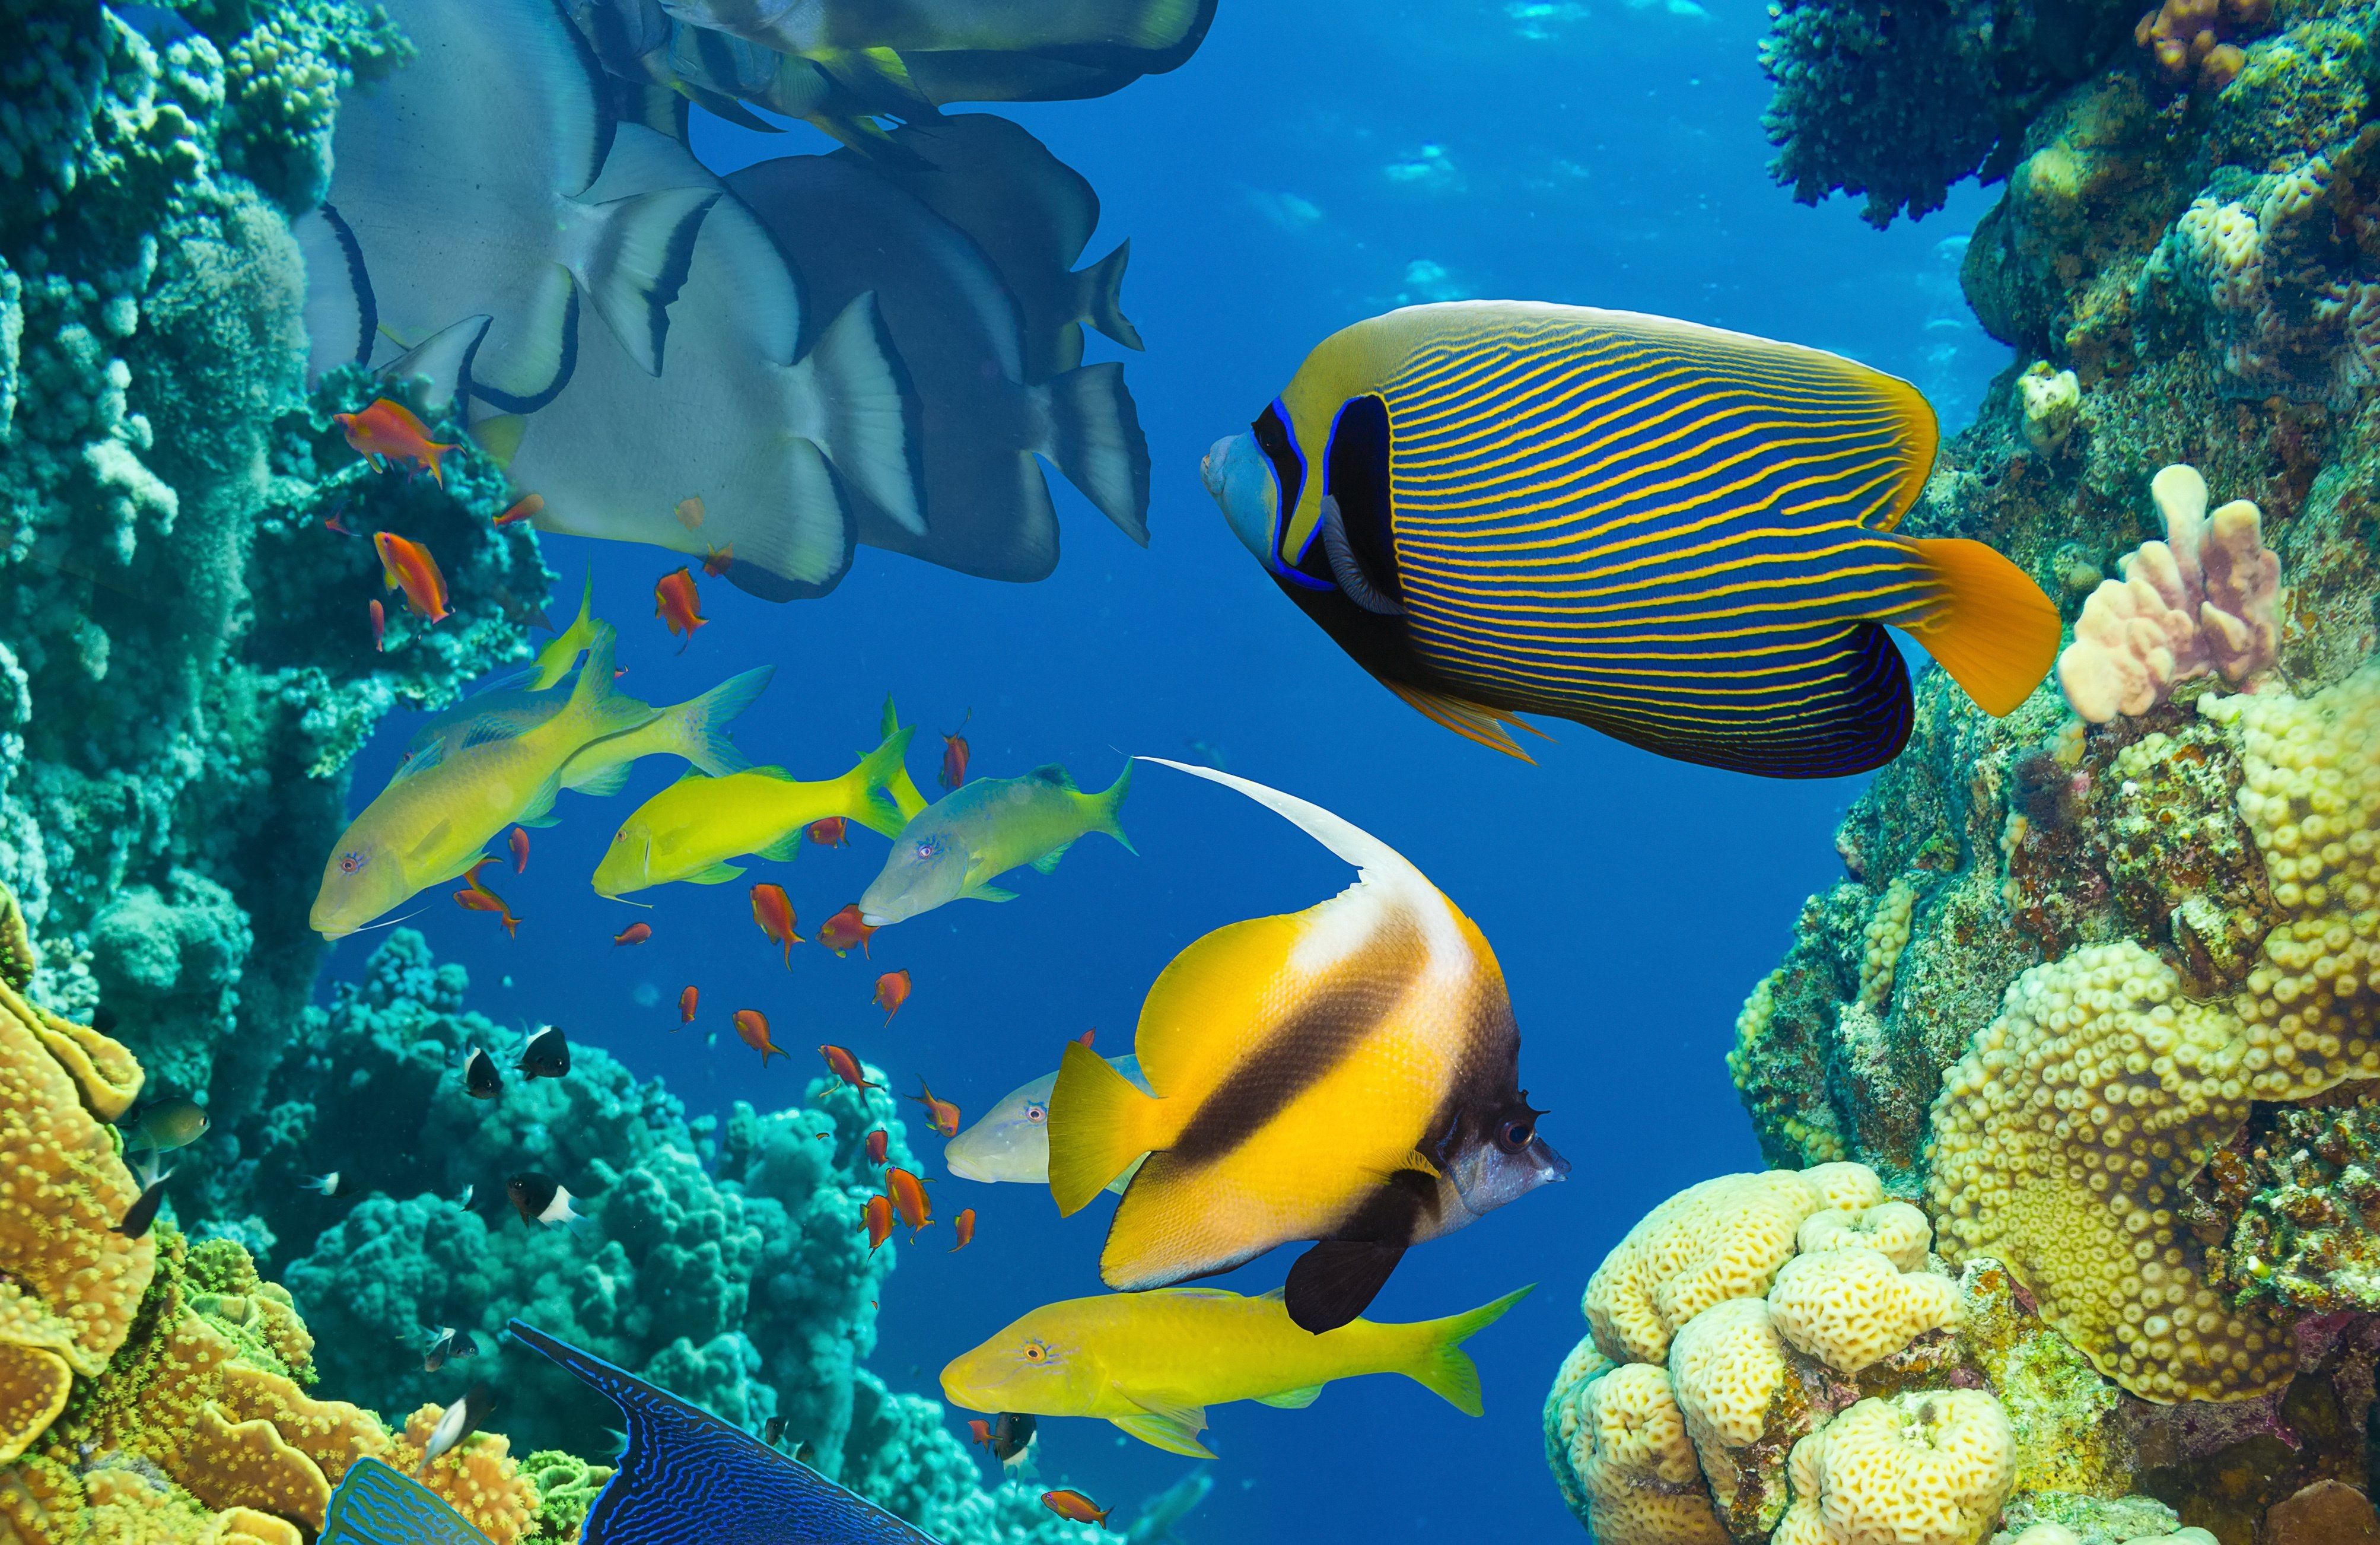 Live Aquarium Wallpaper Awesome 3d Live Fish Wallpaper - Marine Resources  In Ocean - 4012x2604 Wallpaper 